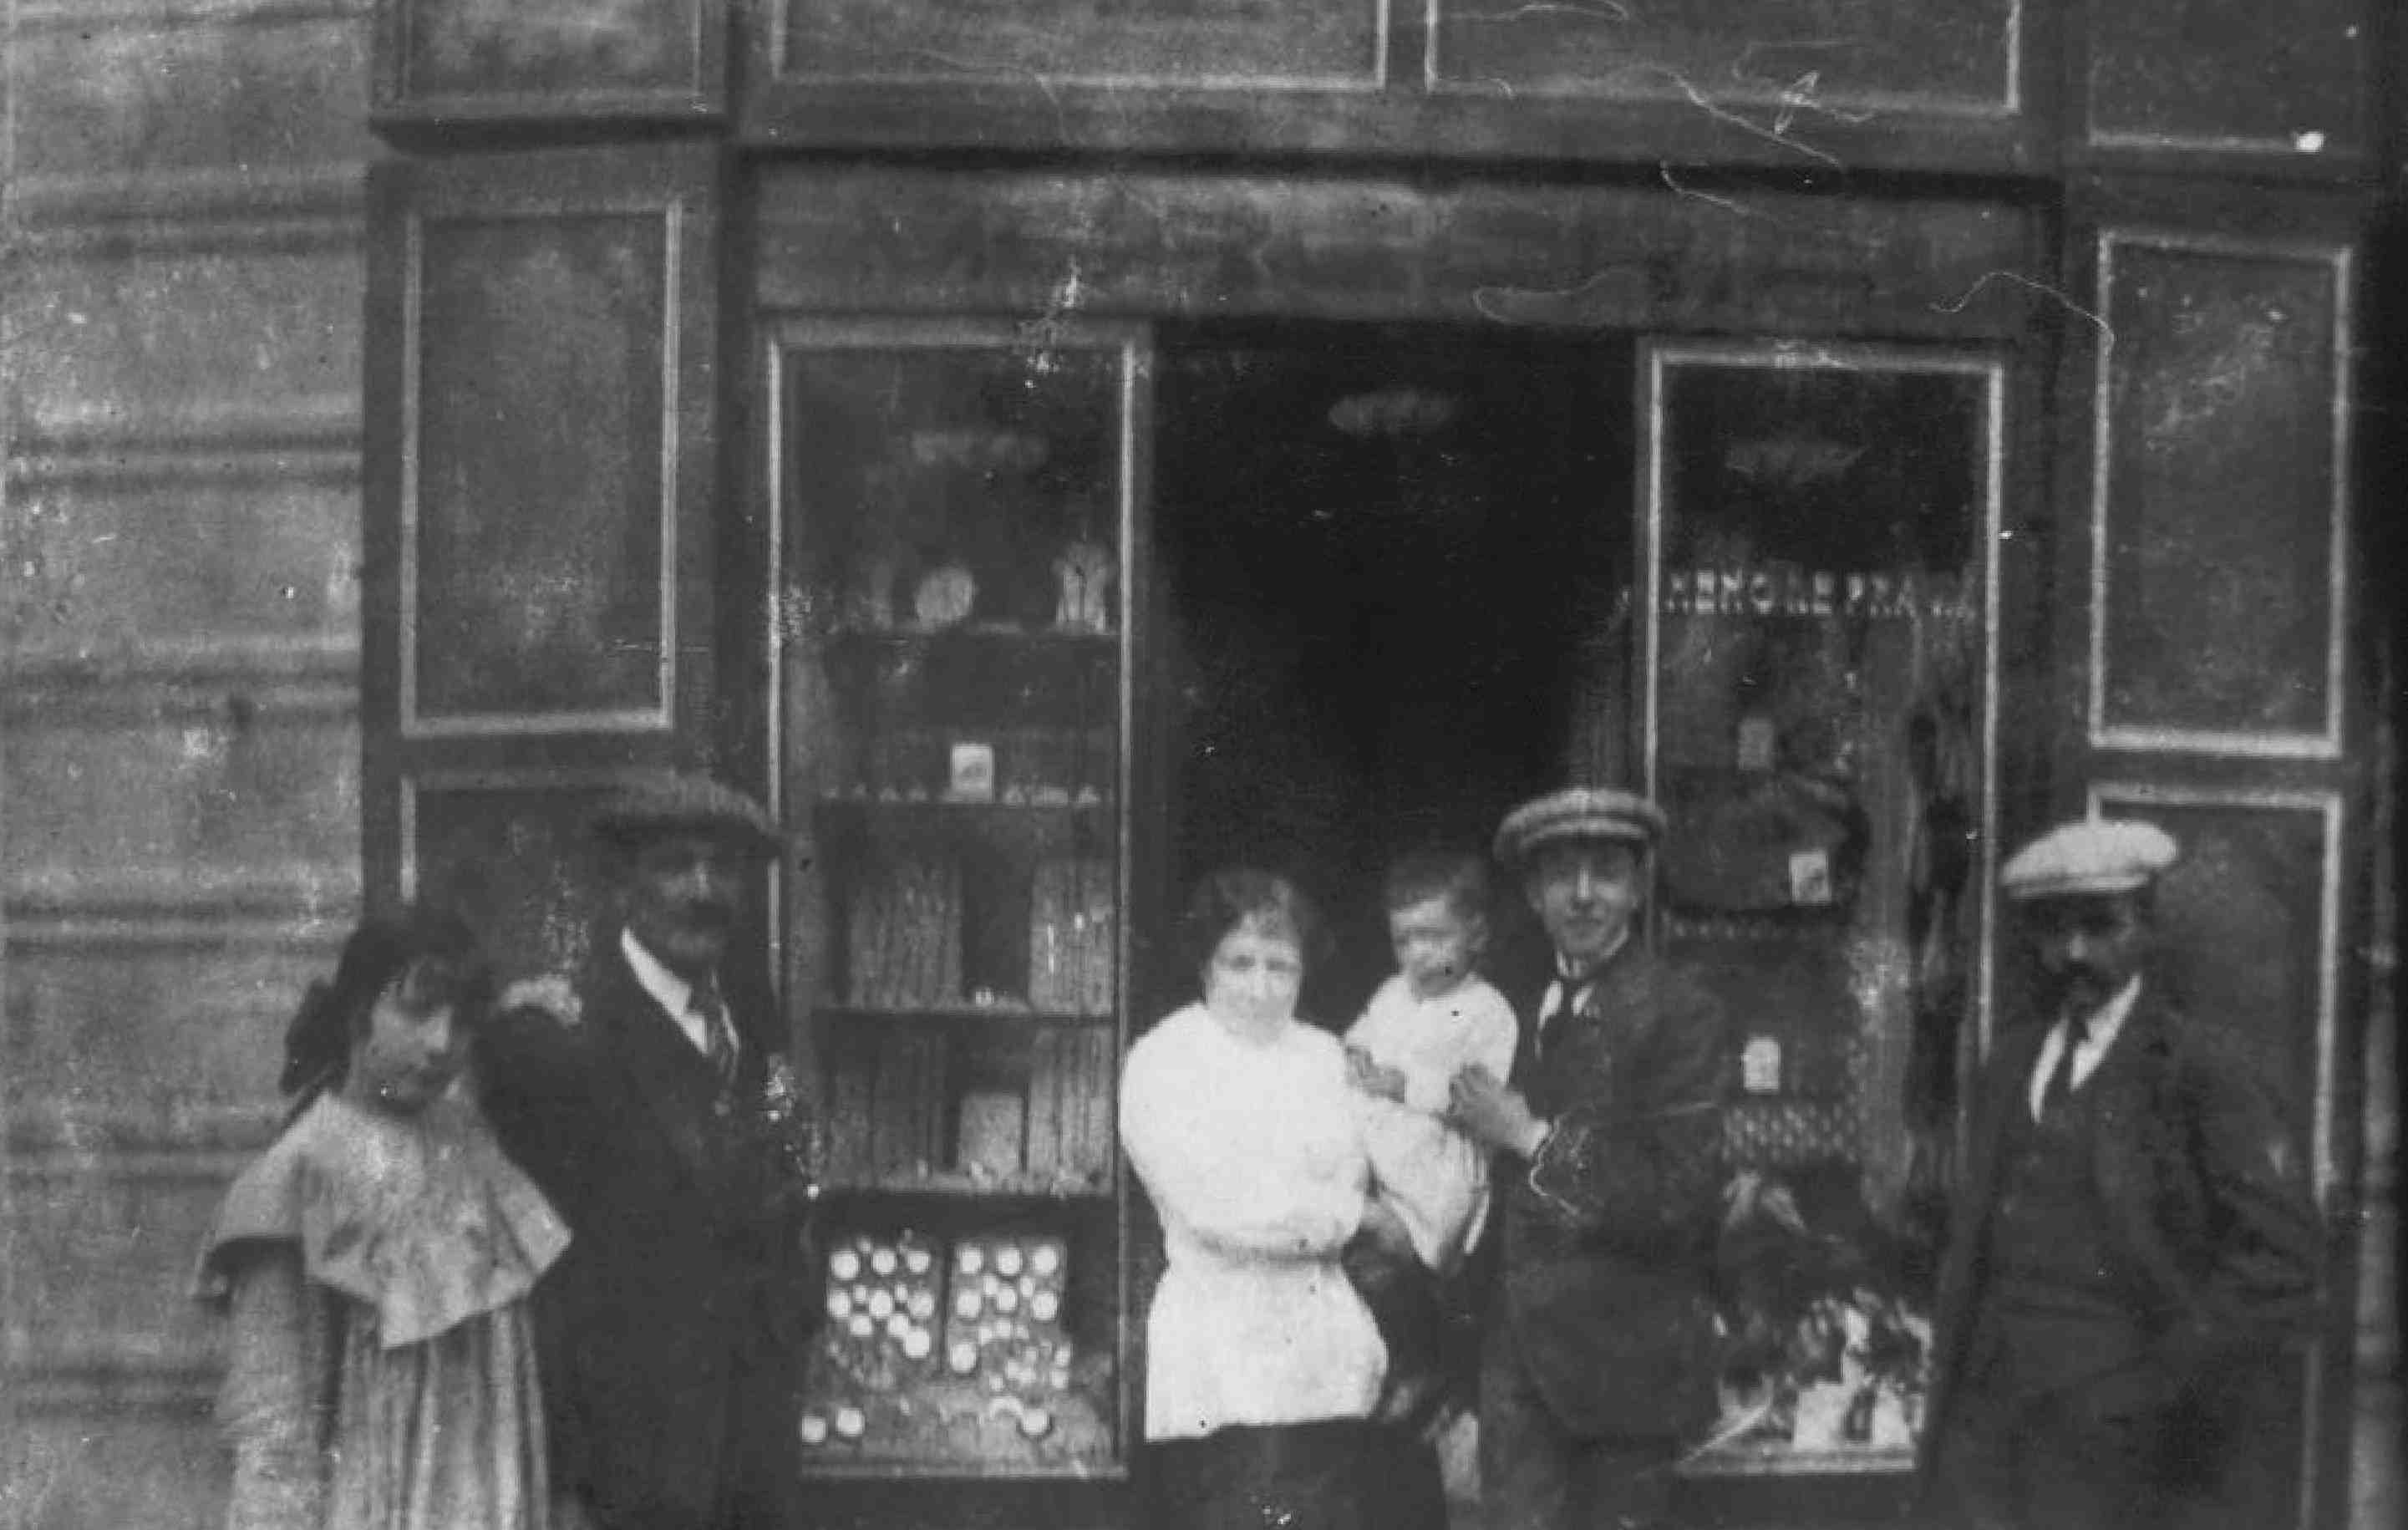 La primera tienda de ropa Barbany abre sus puertas en 1895 en Granollers.